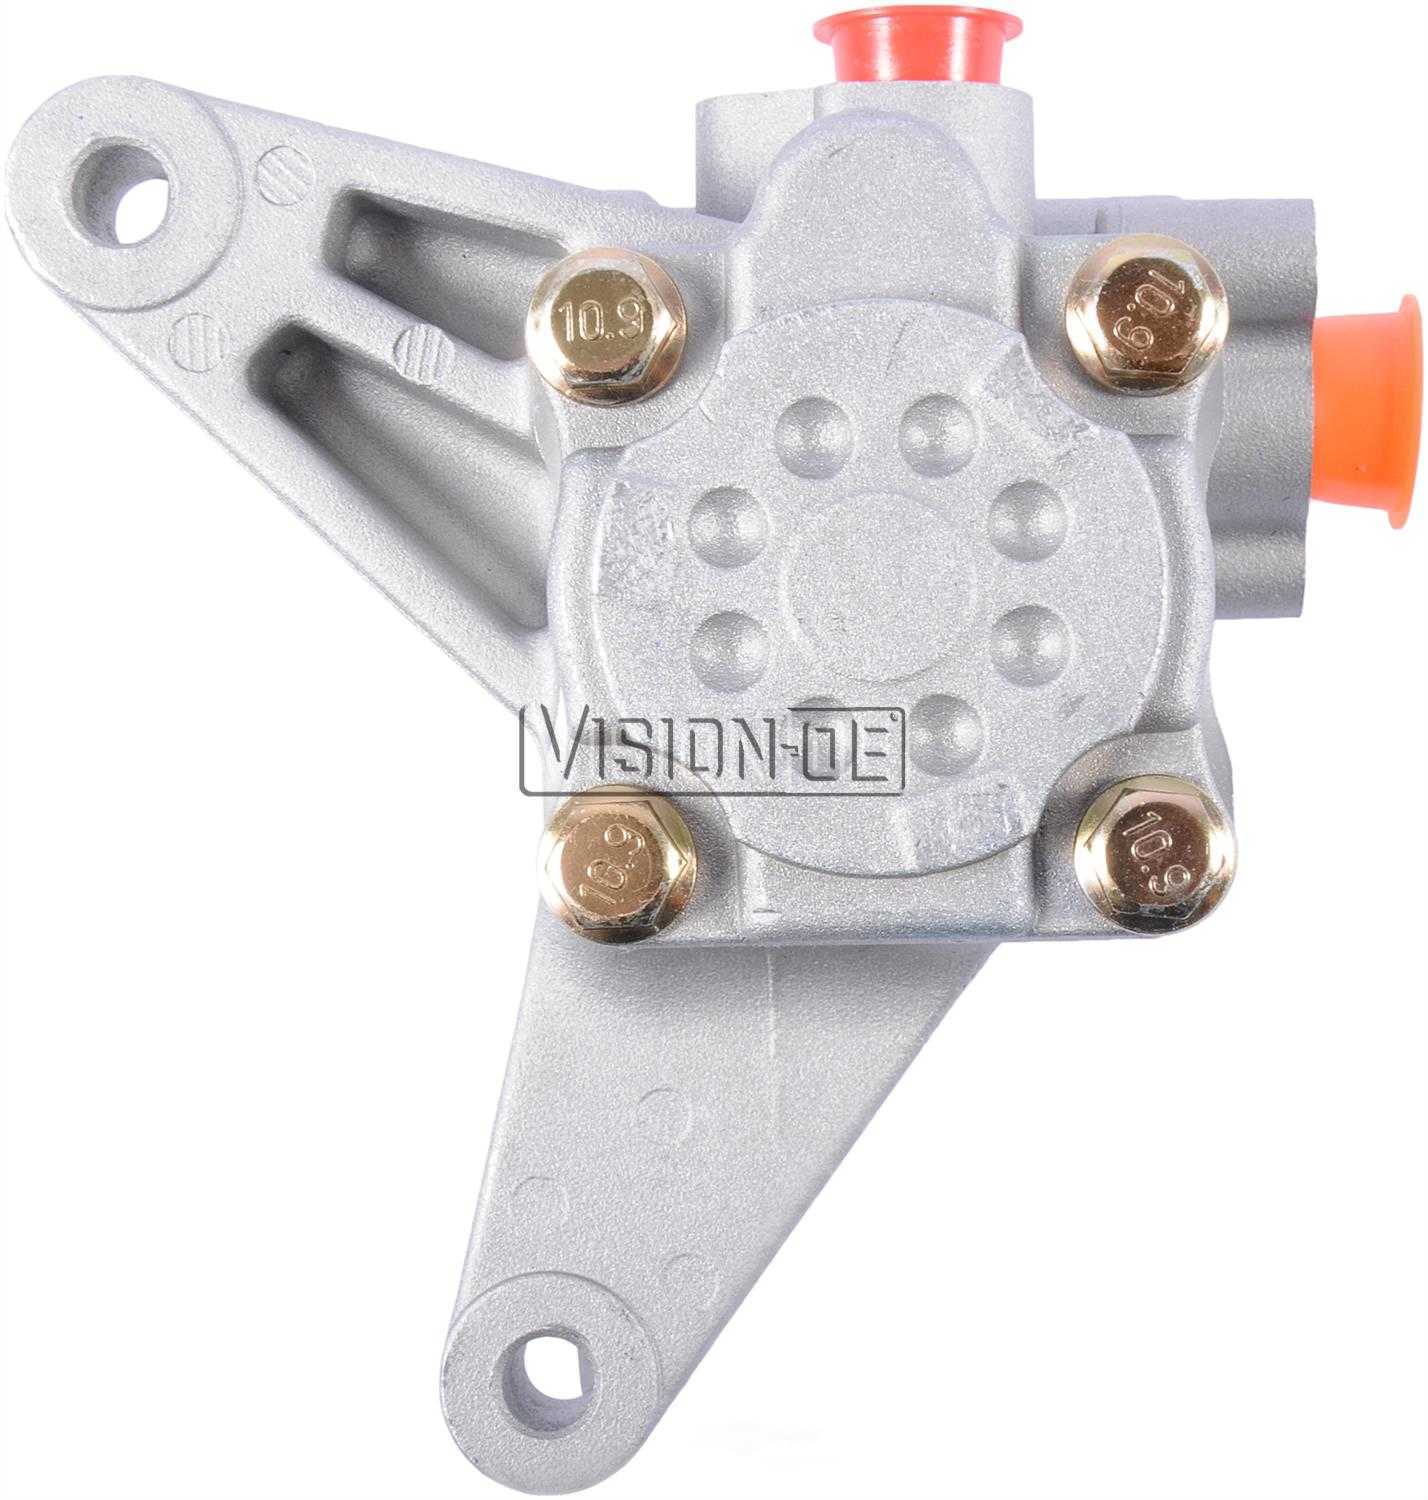 VISION-OE - New Power Steering Pump - VOE N990-0547